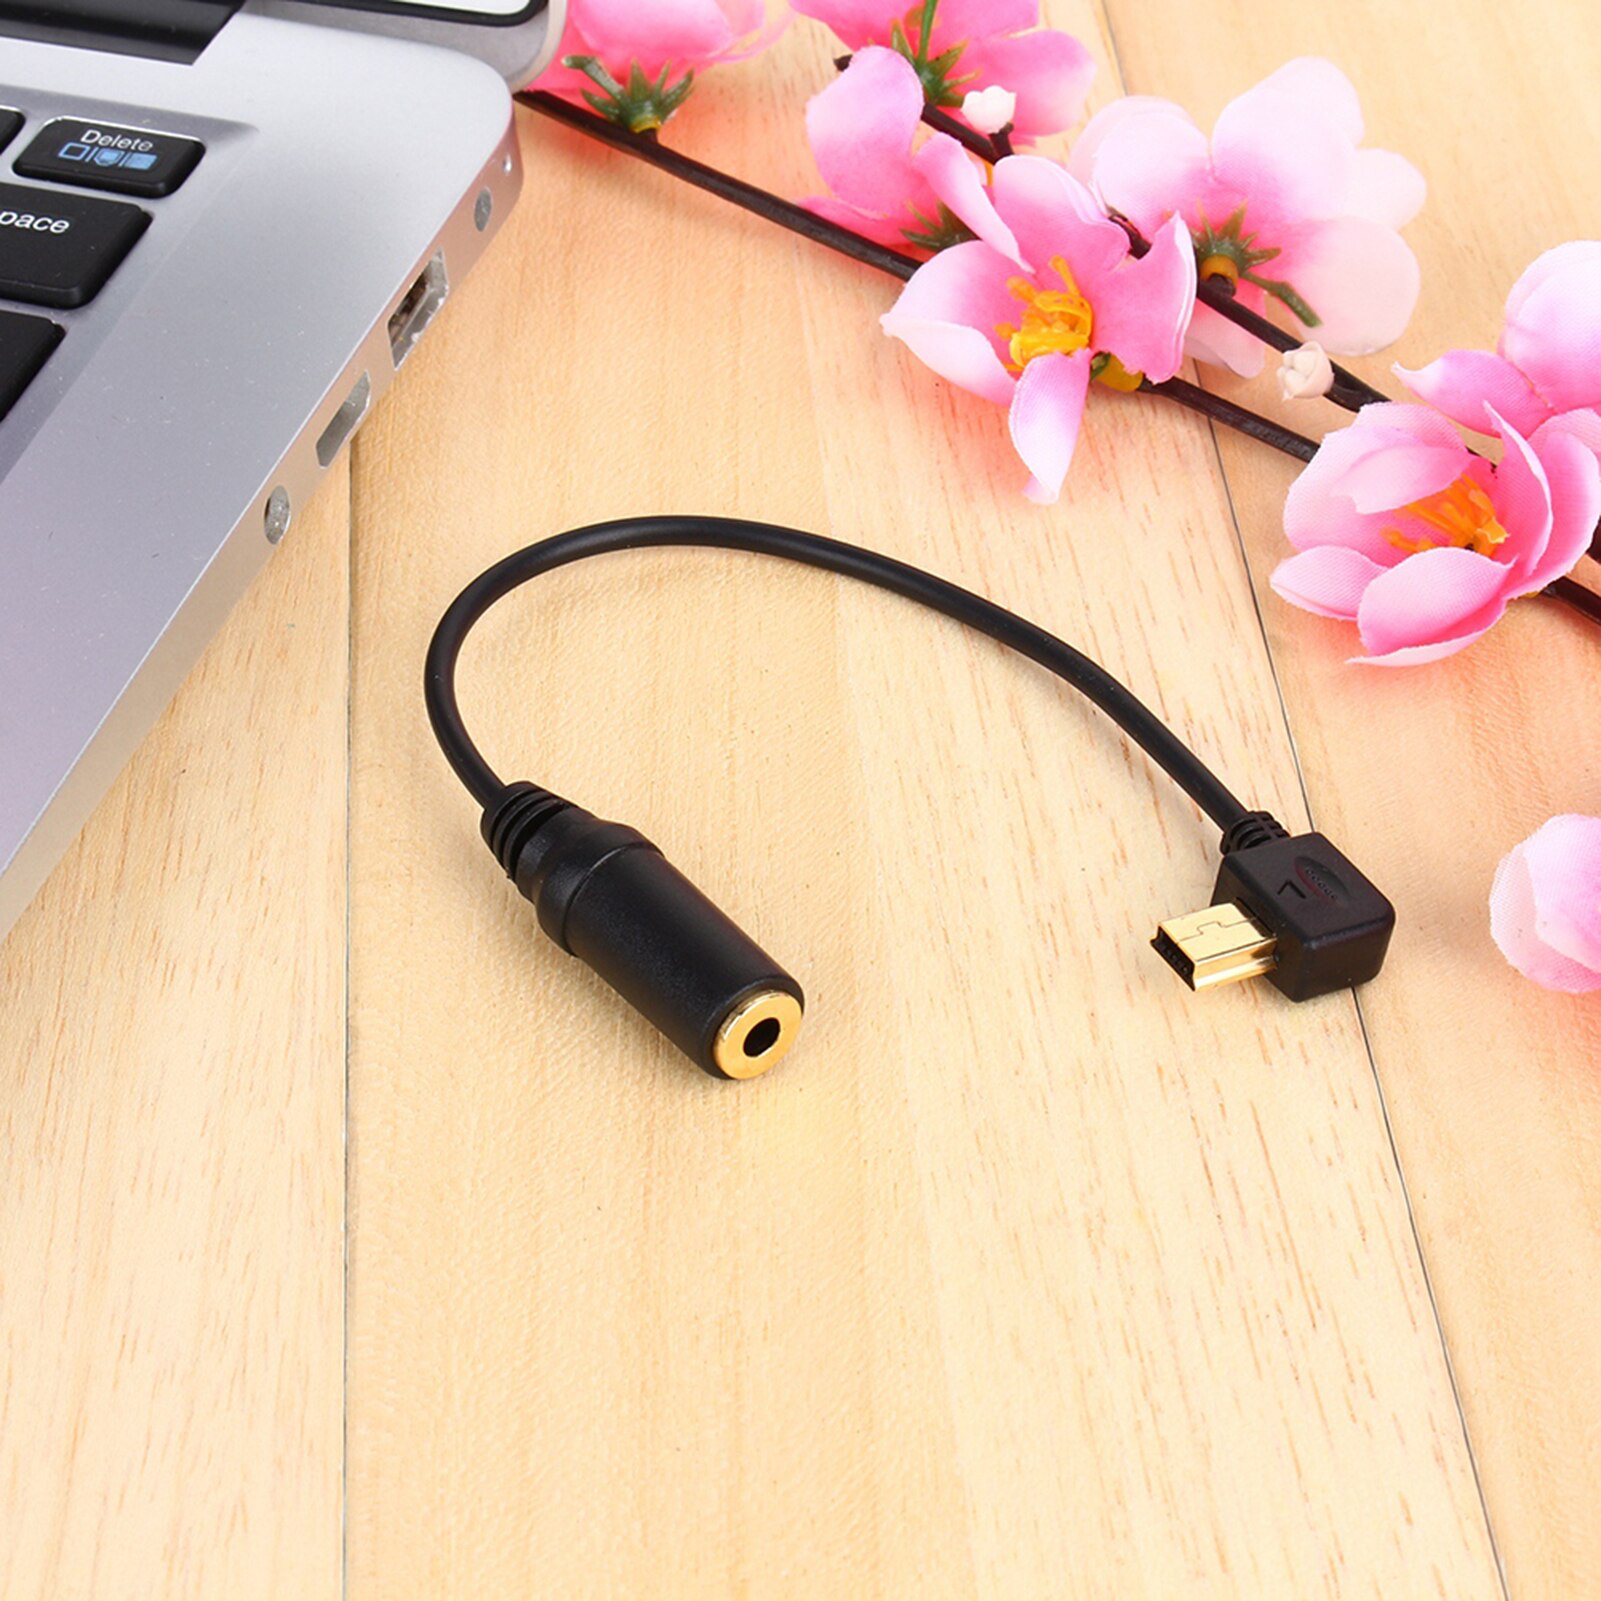 Zwart Mini USB naar 3.5mm Microfoon Mic Adapter Transfer Kabel draad voor GoPro Hero 3 3 + 4 voor Sport Digitale Camera